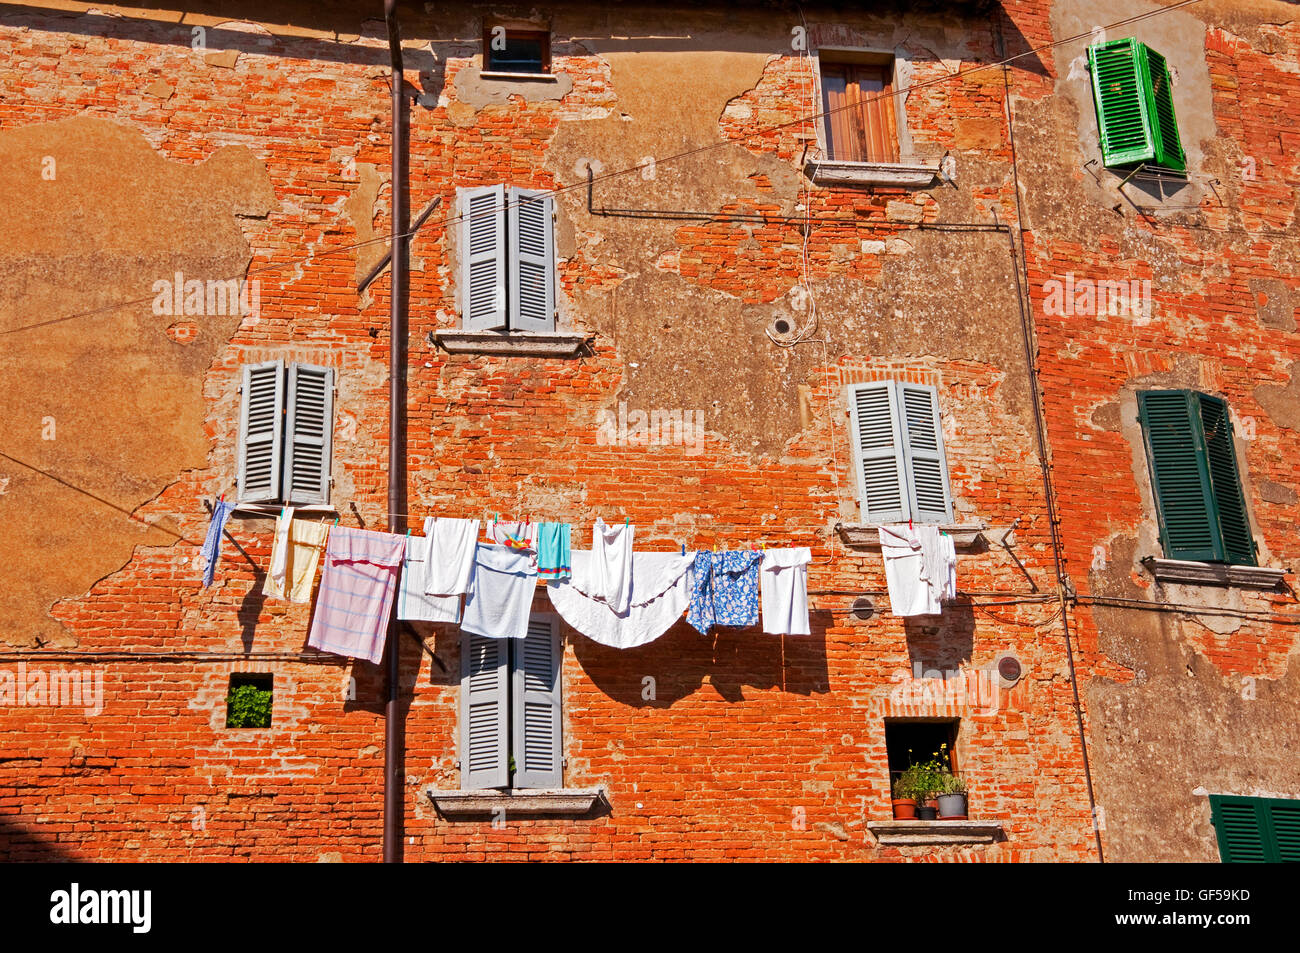 Blanchisserie en train de sécher dehors, Montepulciano, Italie Banque D'Images